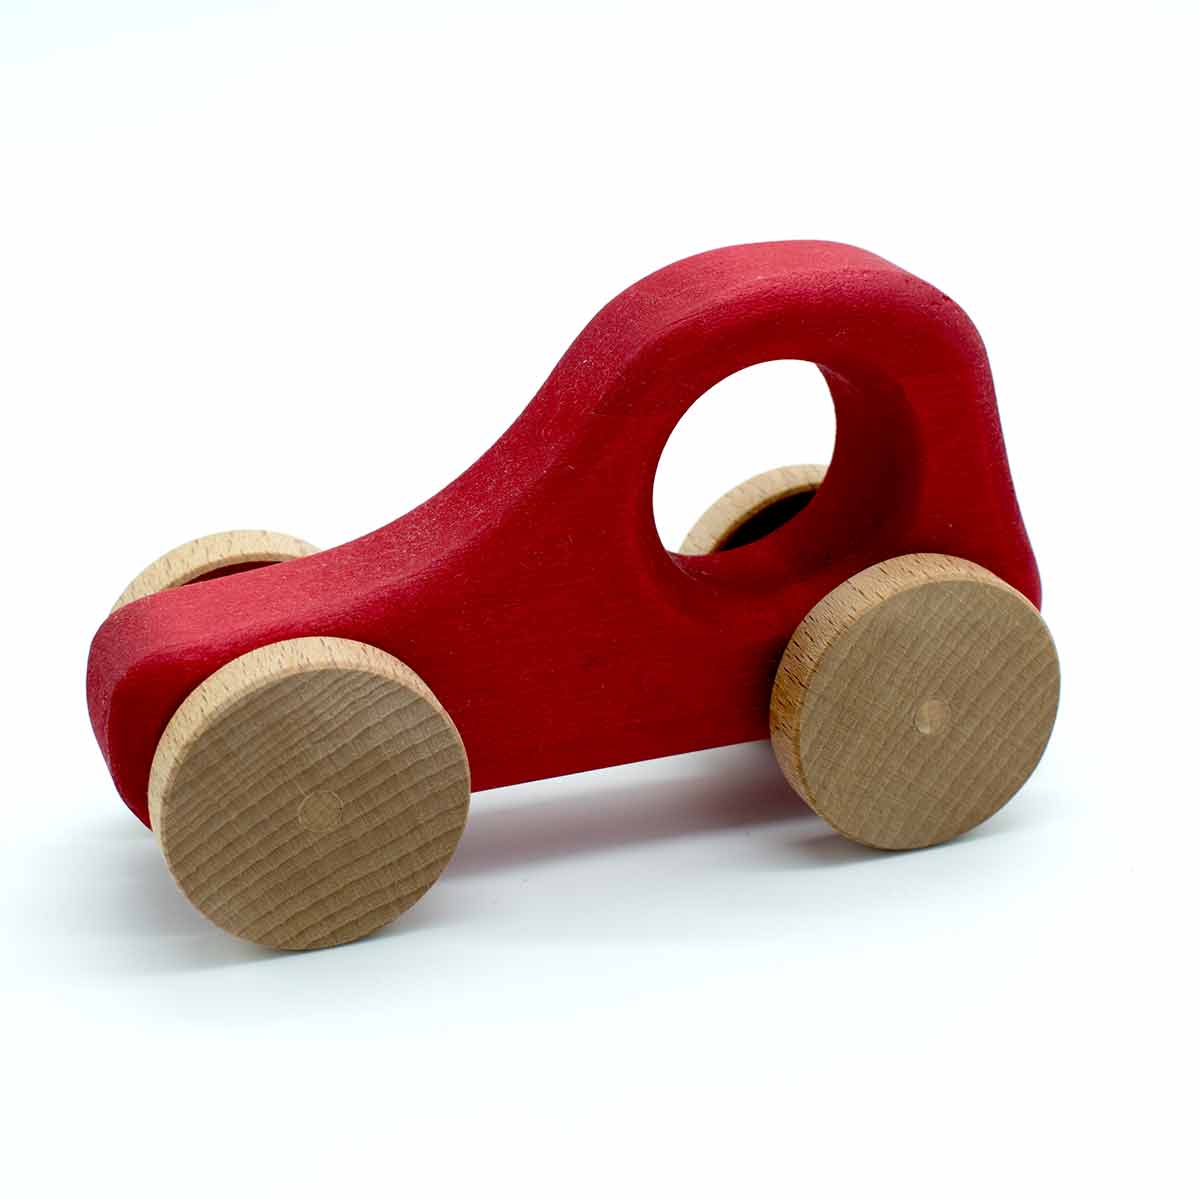 Holzauto aus 100 % Naturmaterialien | Hergestellt in einer geschützen Werkstätte | Set Rot & Blau